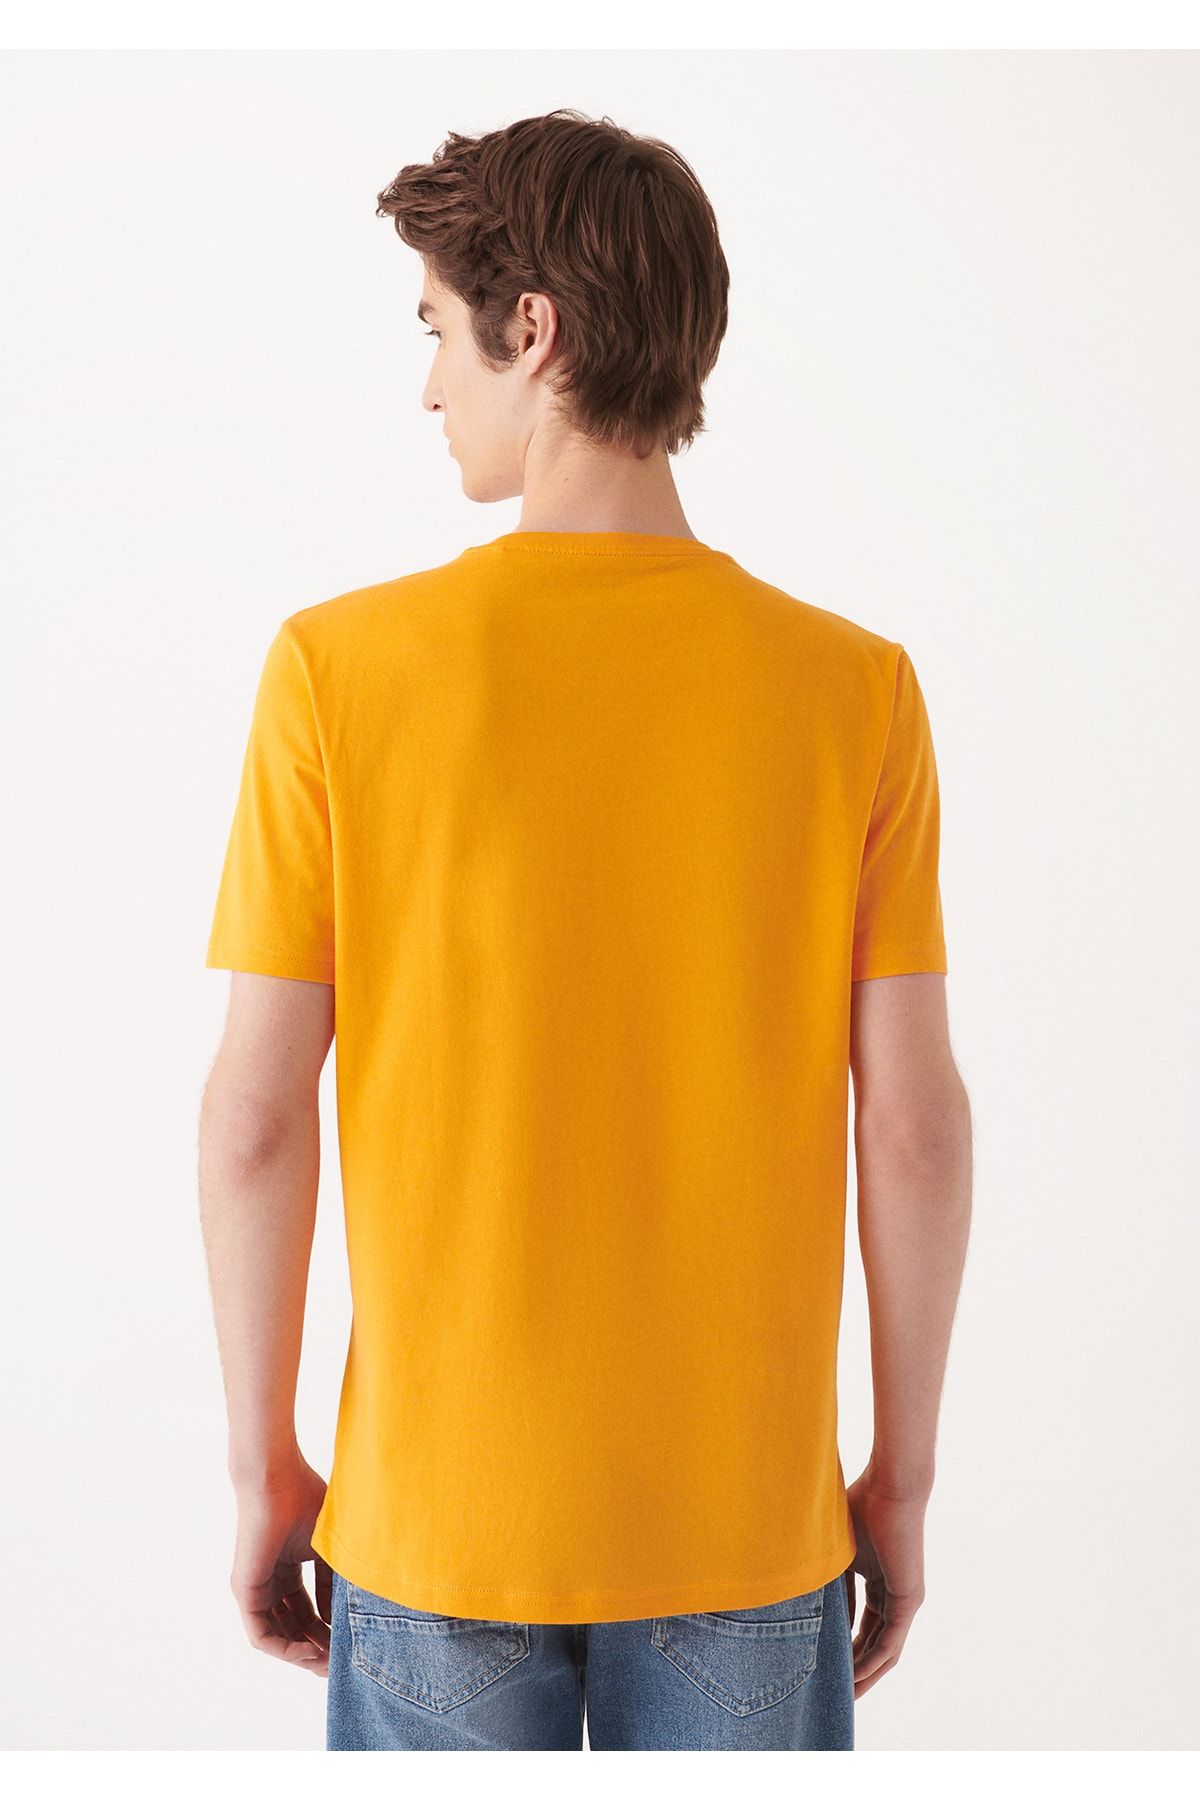 Mavi تی شرت نارنجی چاپی باریک / برش 8810549-71388